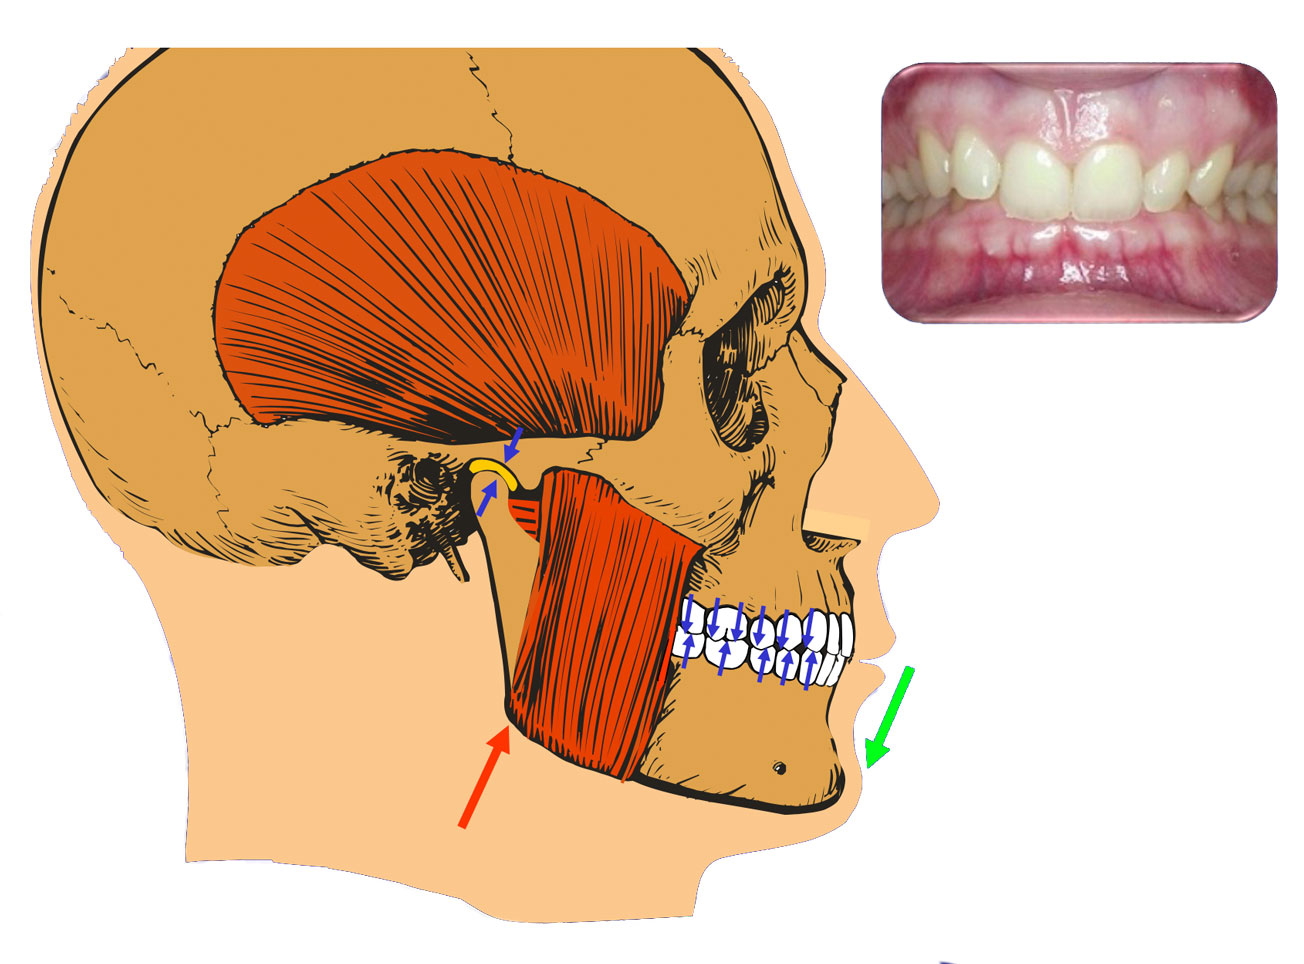 Praktyka Ortodontyczna Orthosmile, Wrocław: Zgodność maksymalnego zaguzkowania zębów z centralną relacją w stawach skroniowo-żuchwowych. Ilustracja dzięki uprzejmości prof. Jeffrey’a Okesona